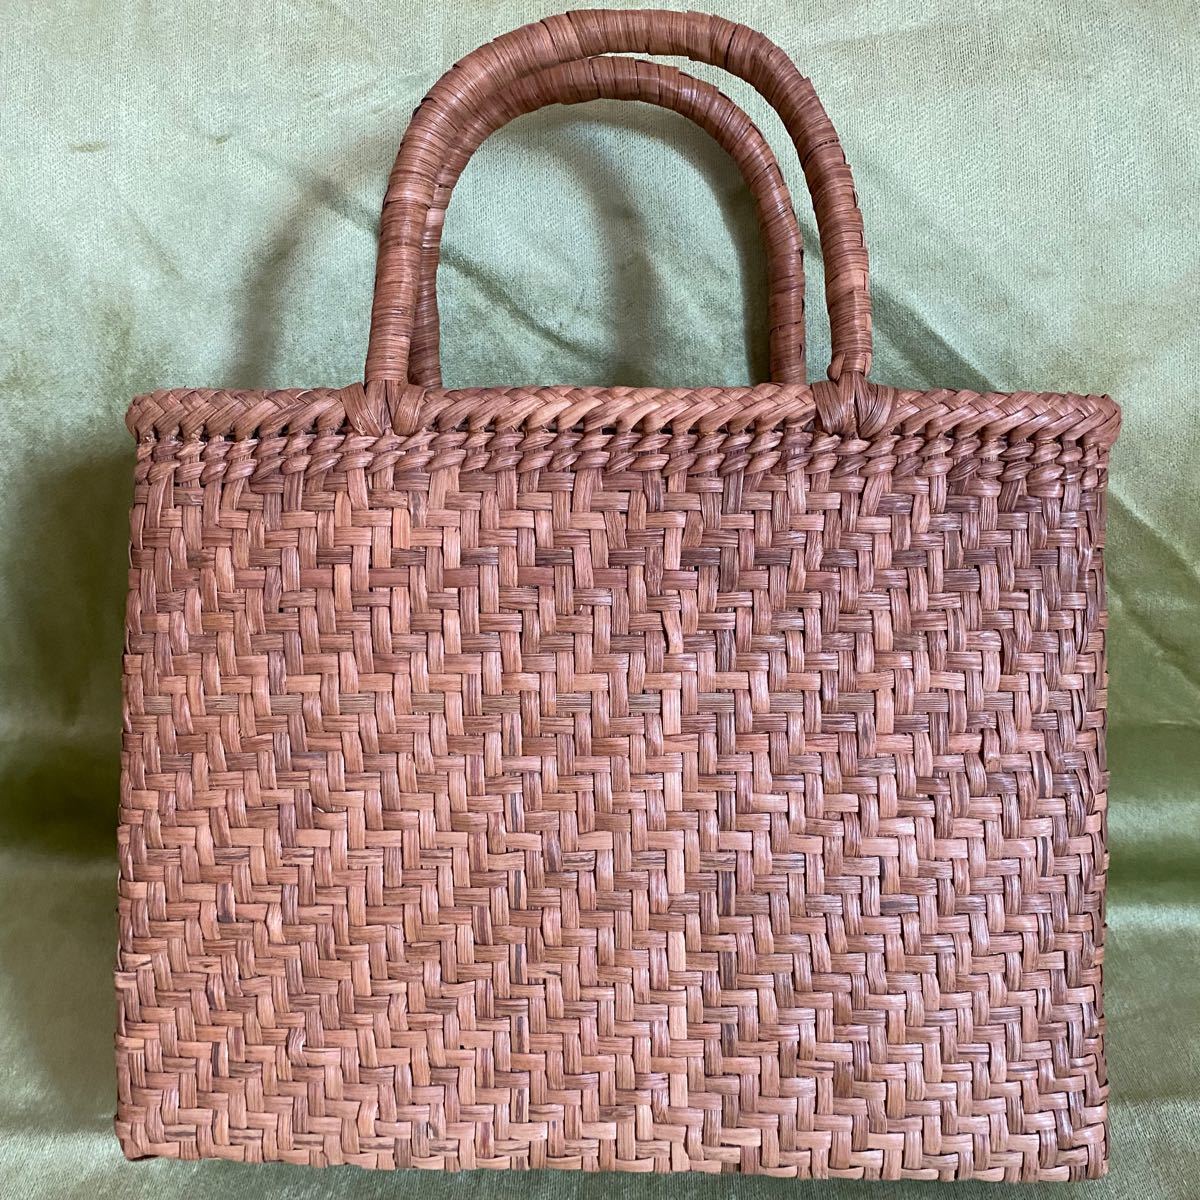 史上最も激安 職人手編み 肩掛け兼用 網代編み 山葡萄籠バッグ 未使用品 長野産 サイズXL - かごバッグ